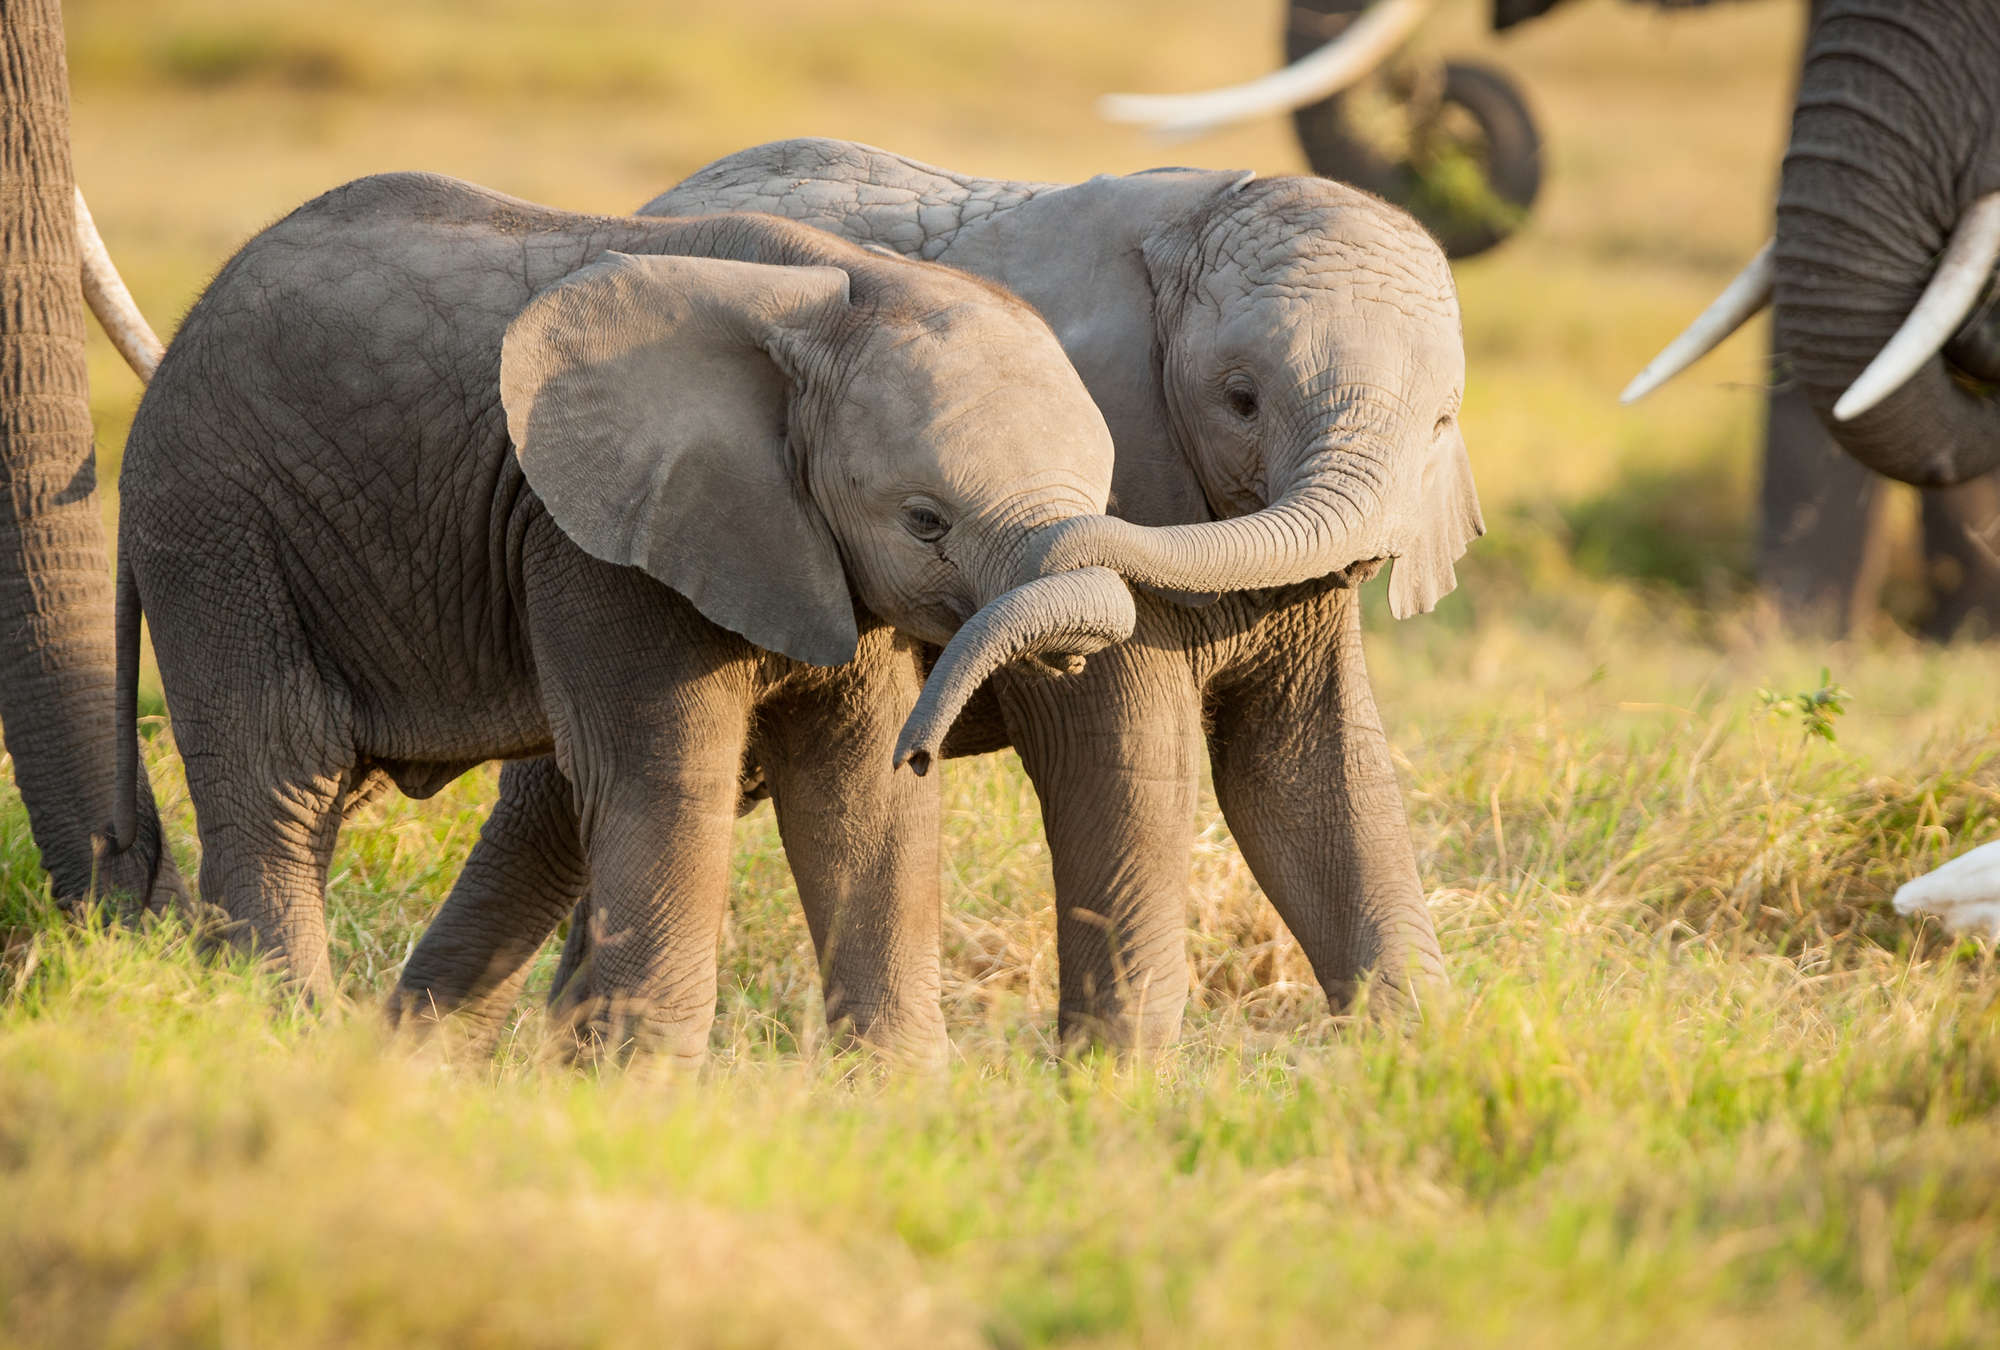             Baby olifanten in de savanne muurschildering
        